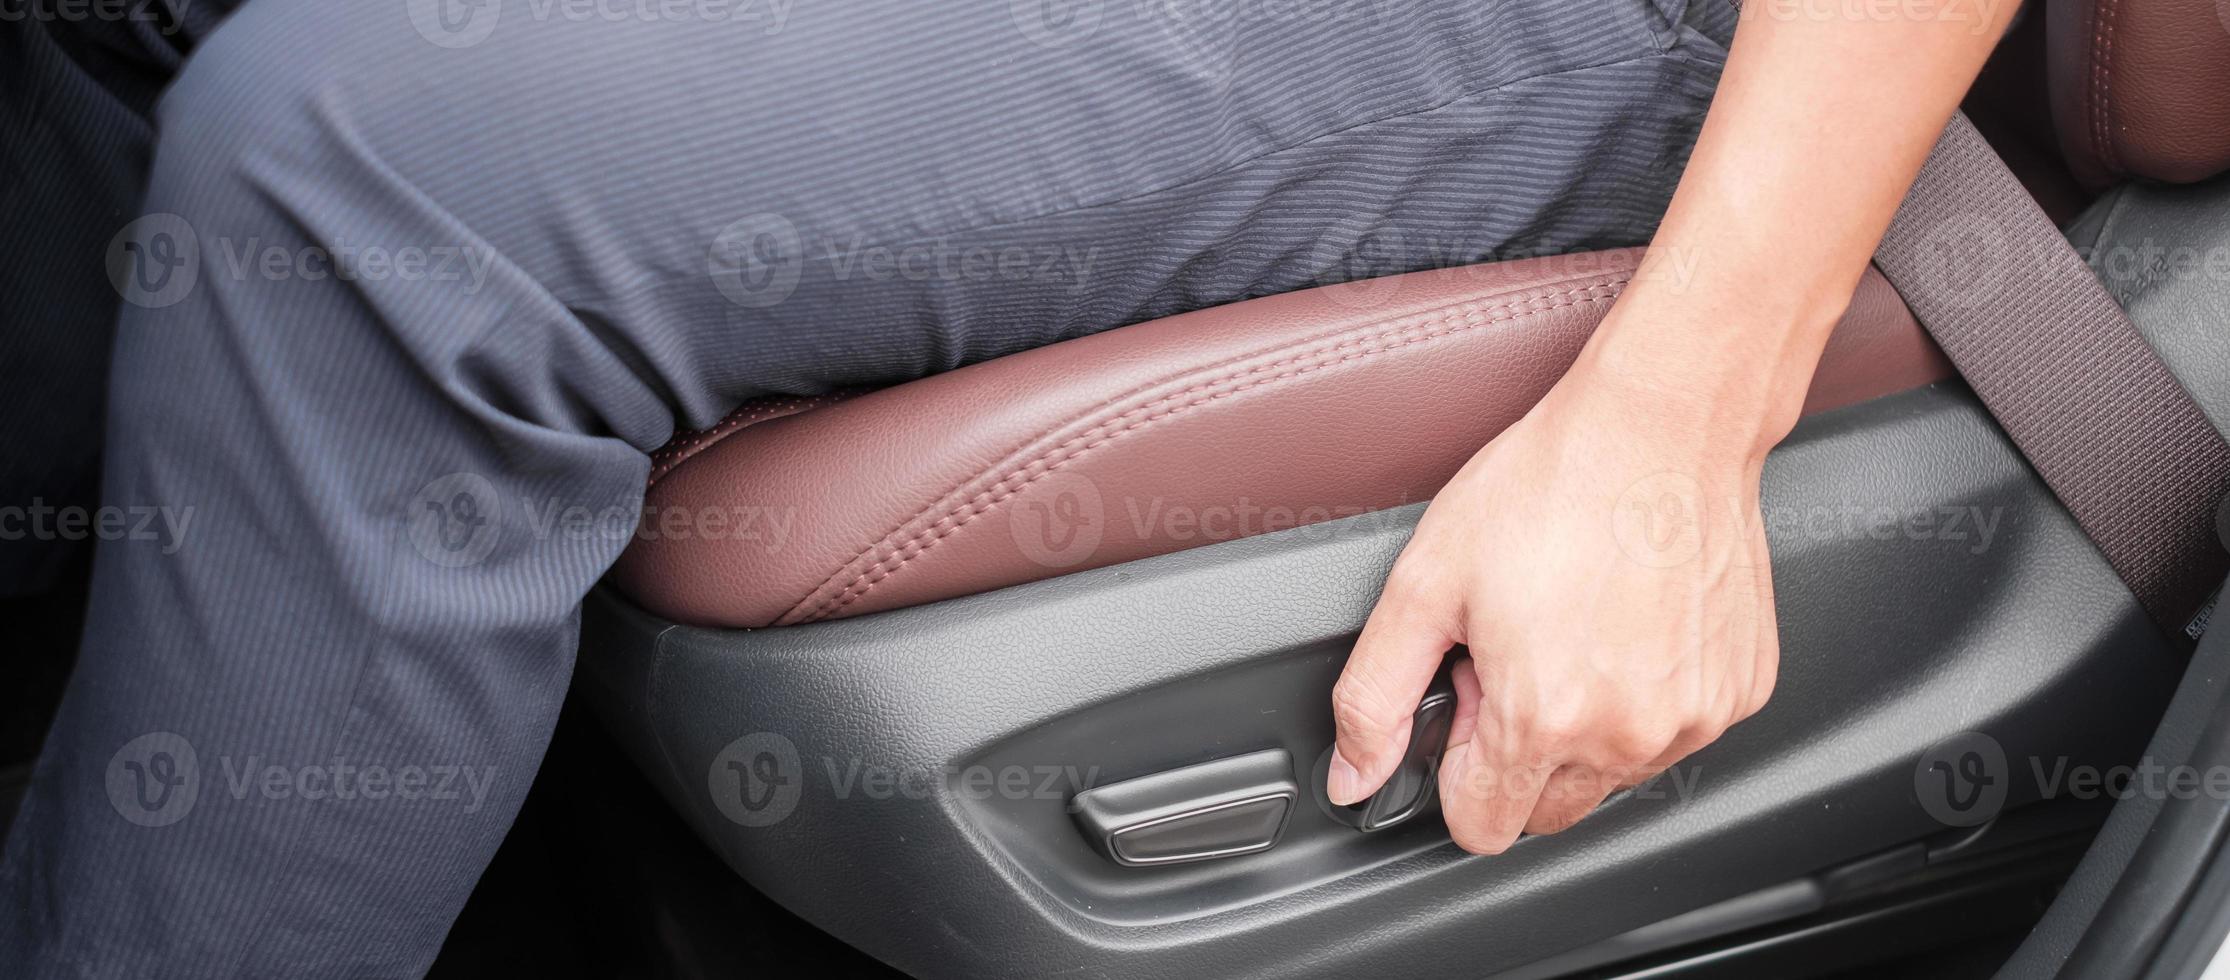 ajuste a mano el asiento del automóvil antes de conducir en la carretera. concepto de transporte ergonómico y seguro foto